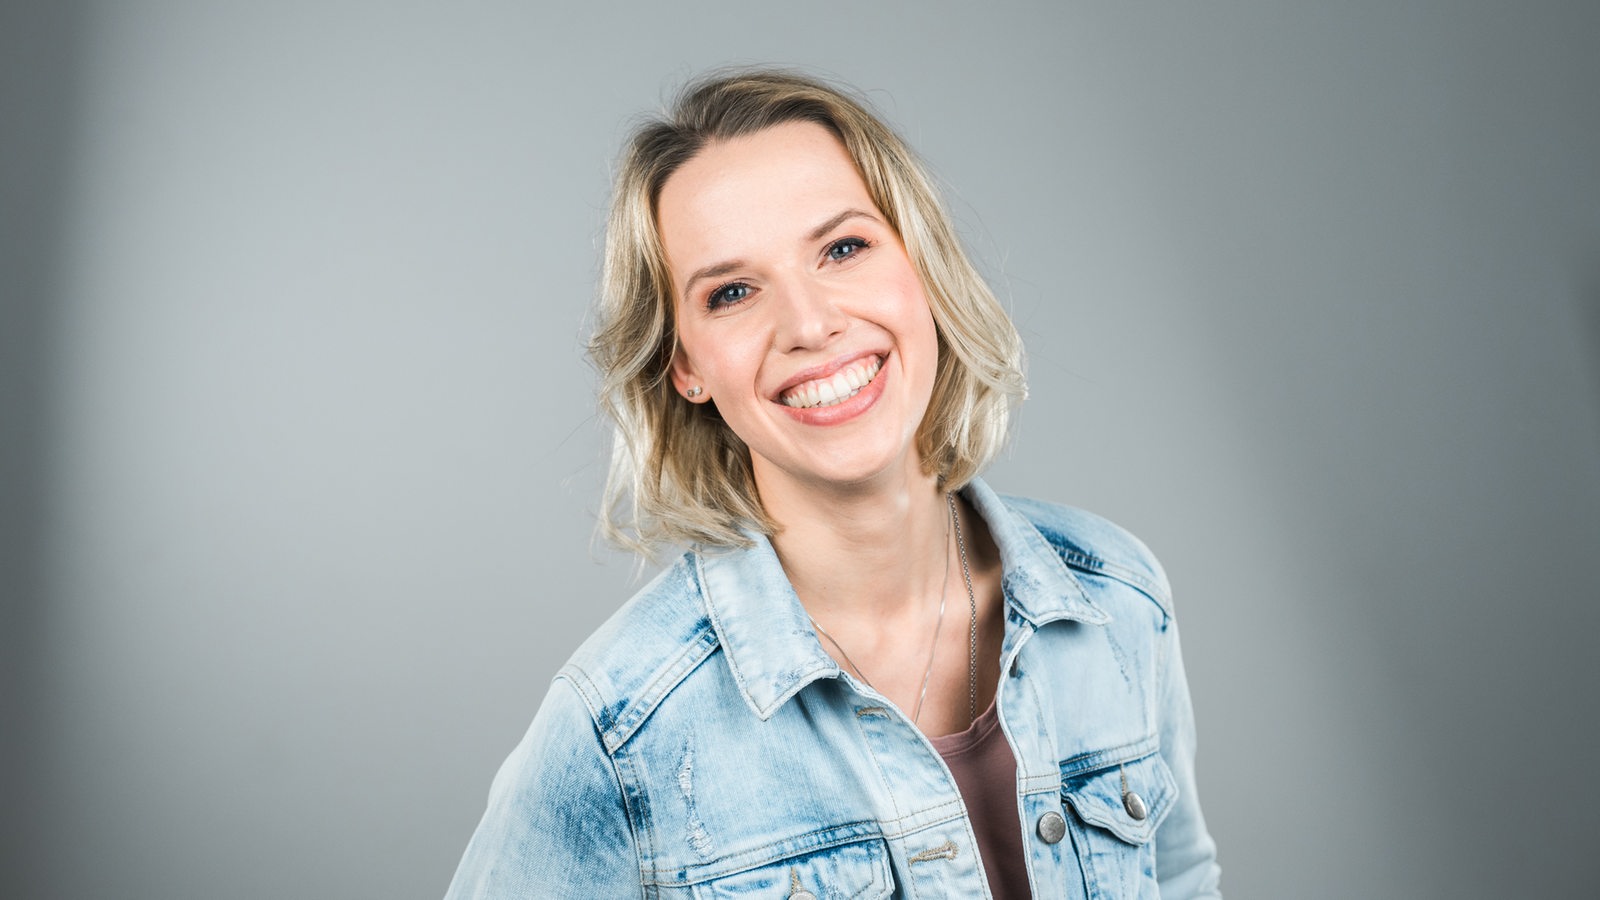 Morgenshow-Teammitglied Marilena Dahlmann in einer blauen Jeansjacke lächelt in die Kamera